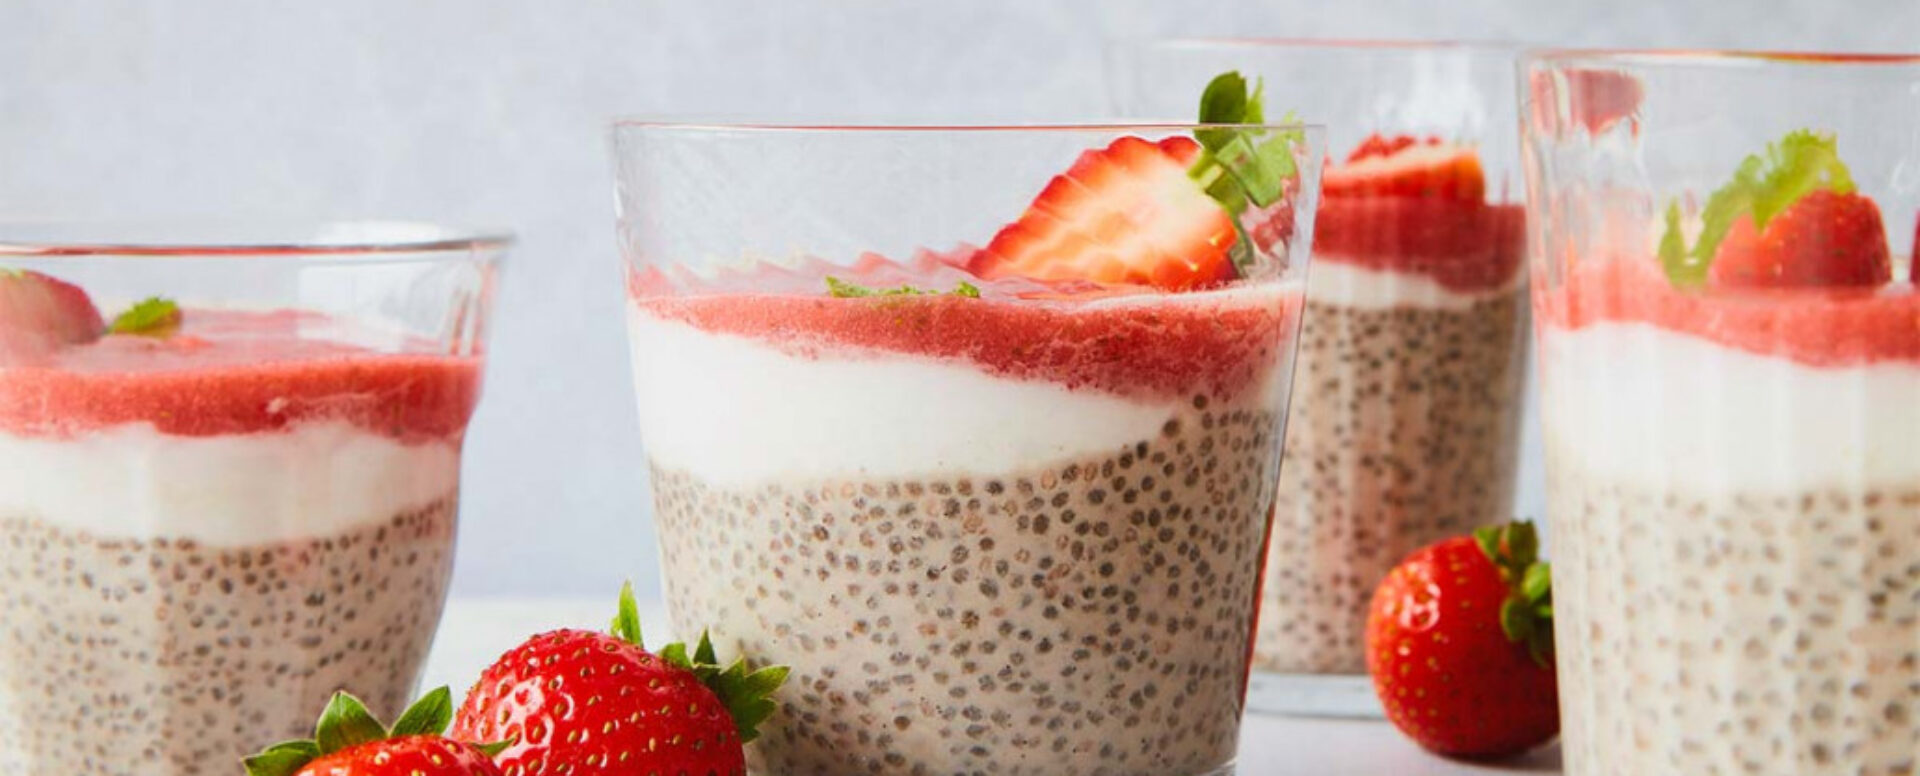 Creamy Coconut Strawberry Chia Breakfast Porridge Recipe